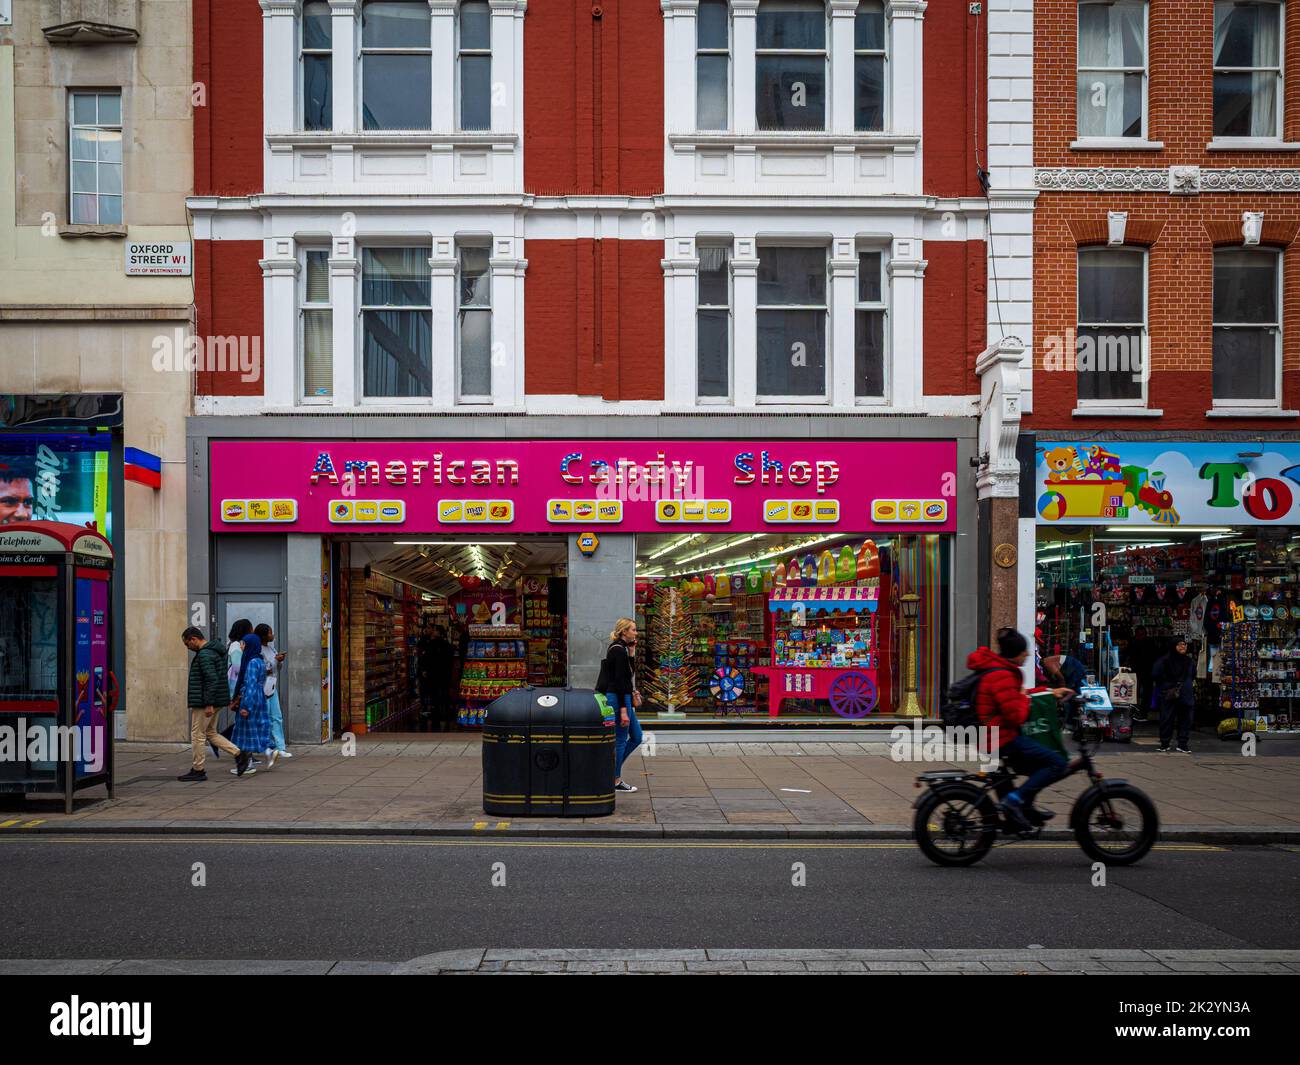 American Candy Shop in der Oxford Street in London. Eine große Anzahl von Pop-up American Candy Shops hat kürzlich in der Oxford Street im Zentrum von London eröffnet. Stockfoto